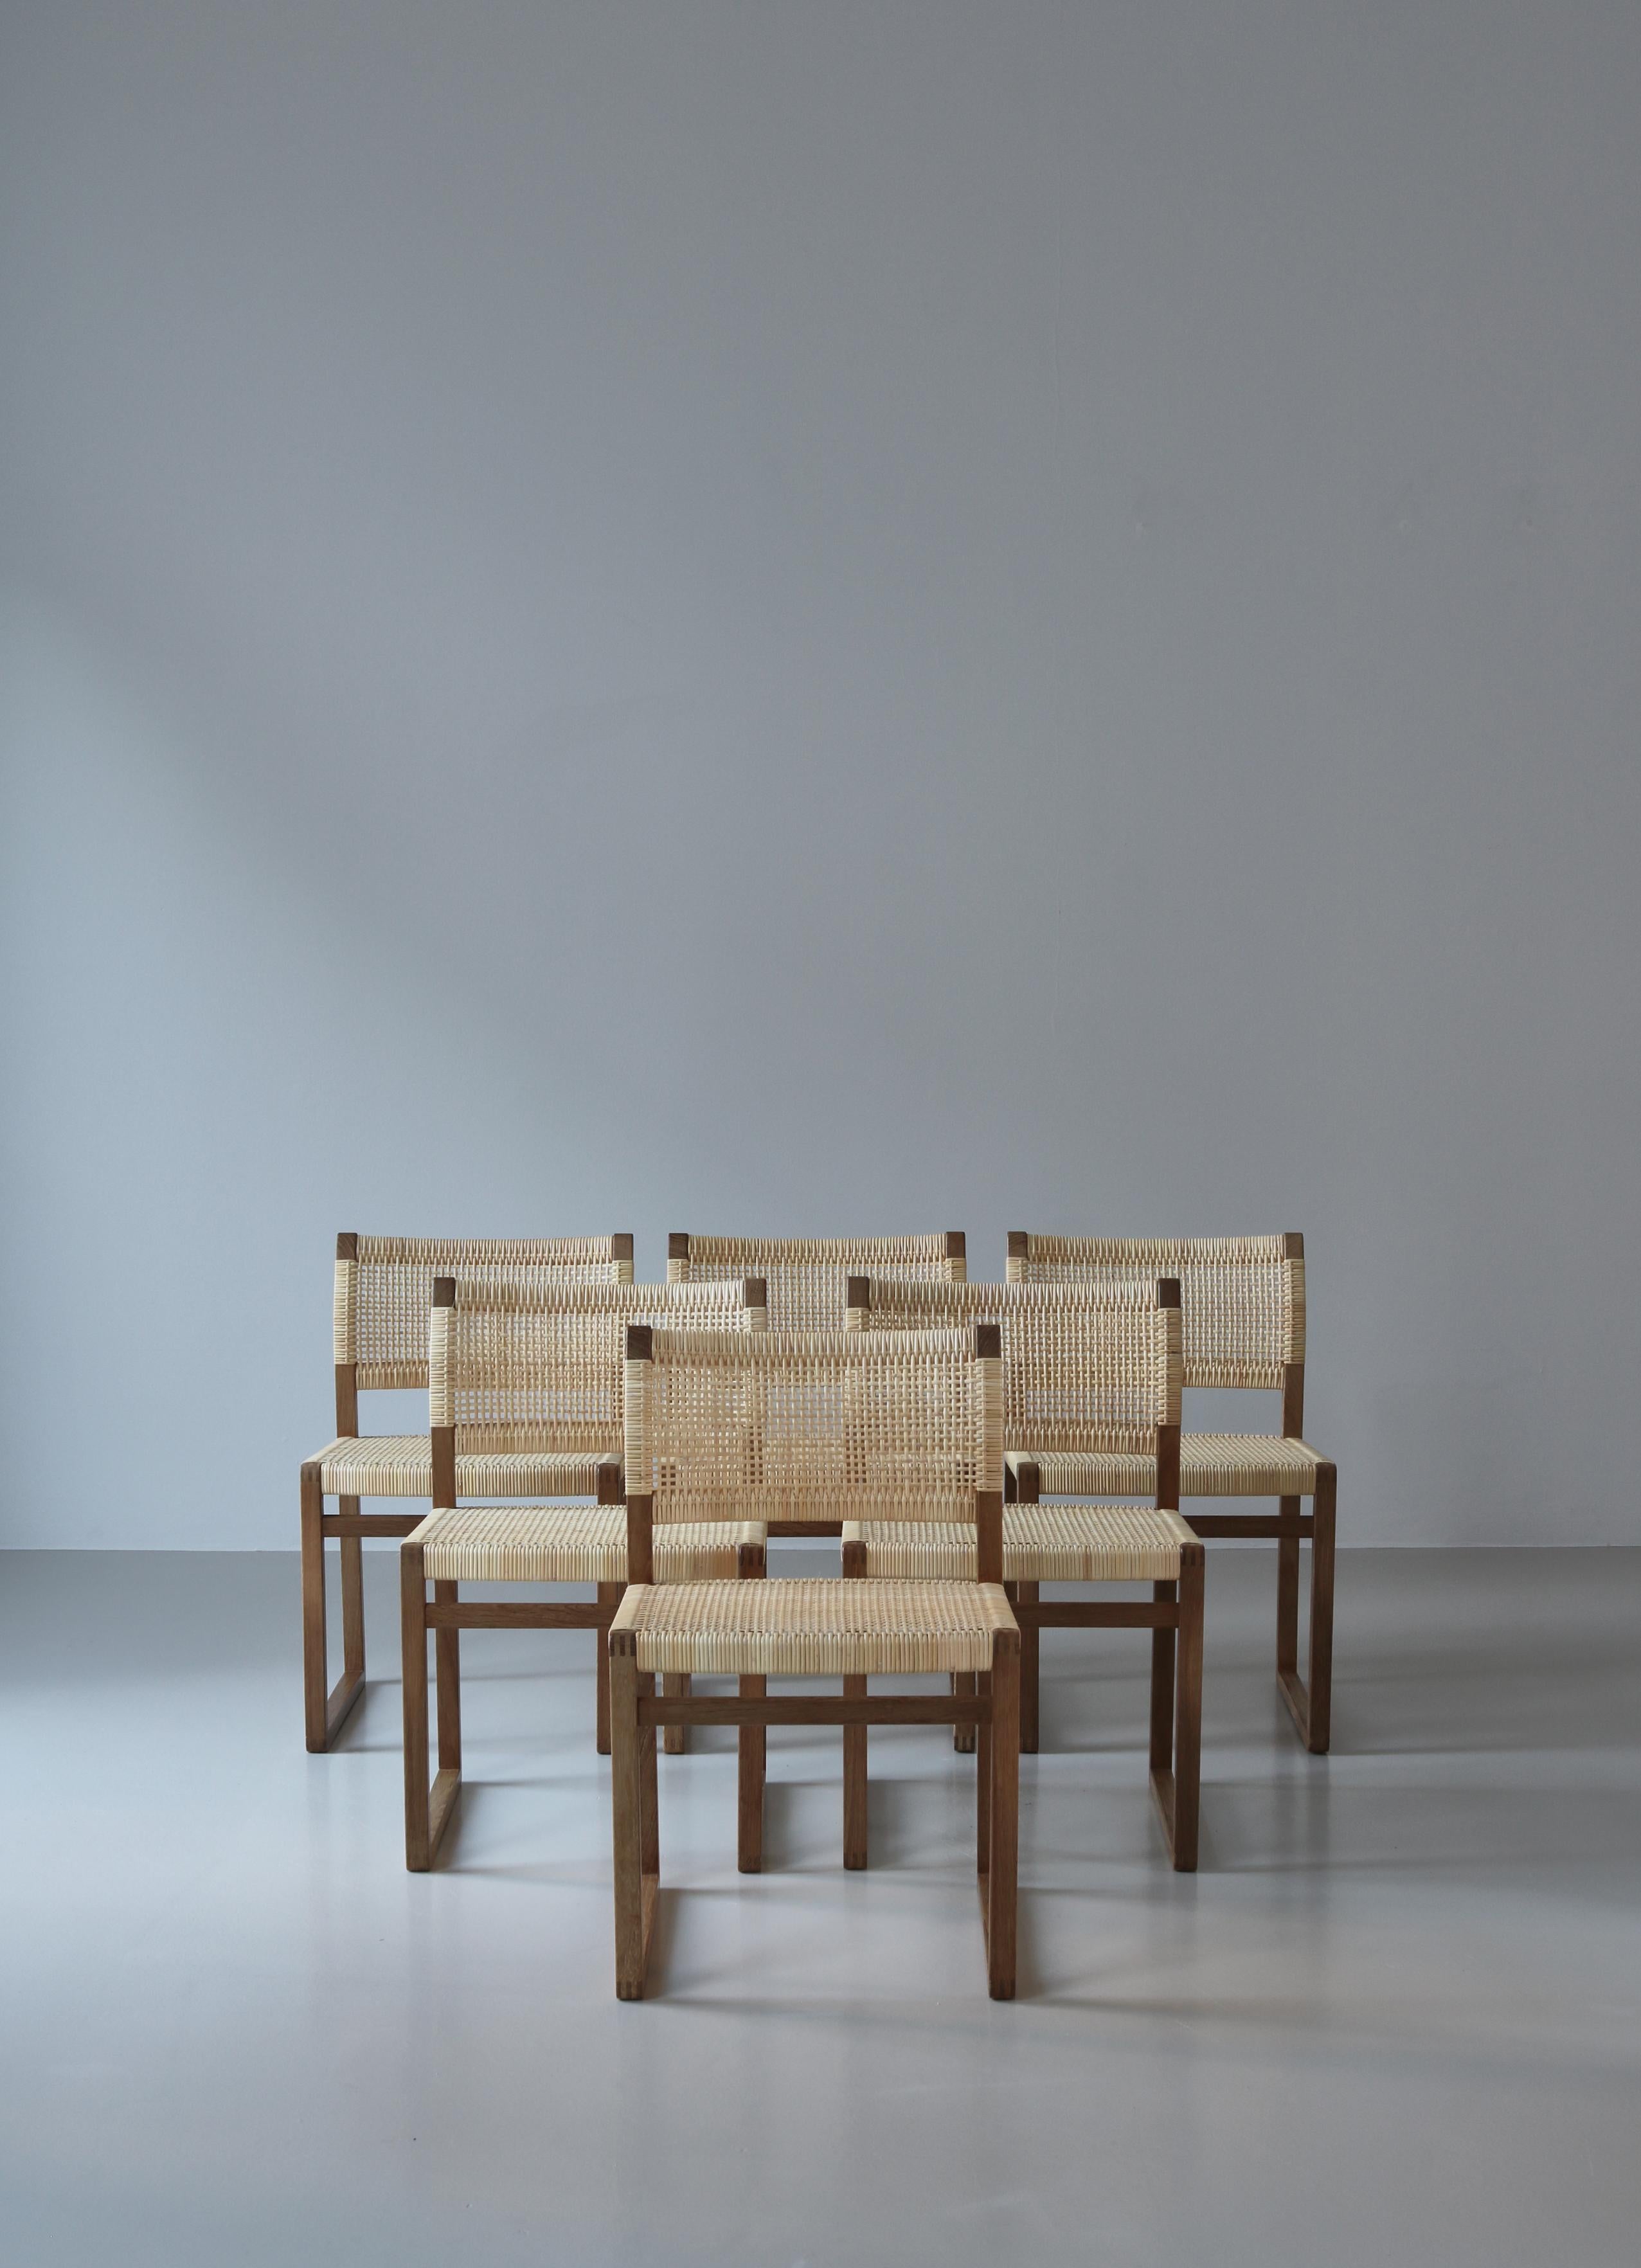 Superbe ensemble de 6 chaises de salle à manger en chêne et rotin, conçu par le designer danois Børge Mogensen et fabriqué par P. Lauritsen & Søn. Cet ensemble provient des toutes premières productions de cette chaise emblématique. Toutes les